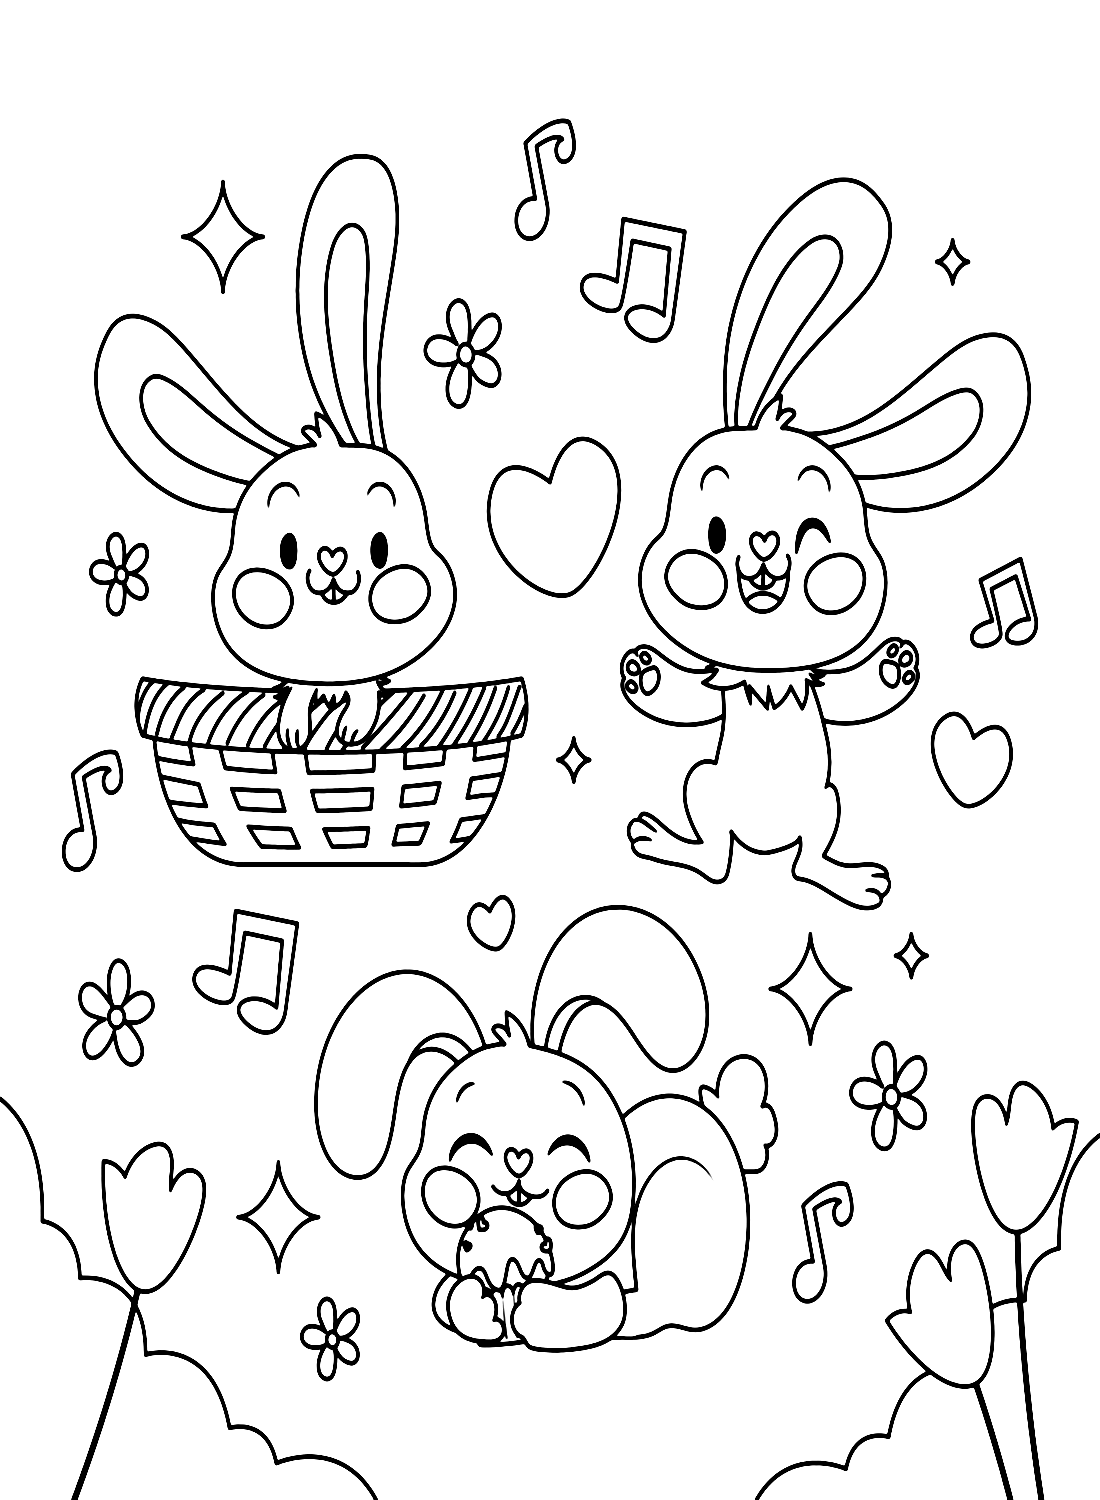 Три кролика наслаждаются музыкой кролика